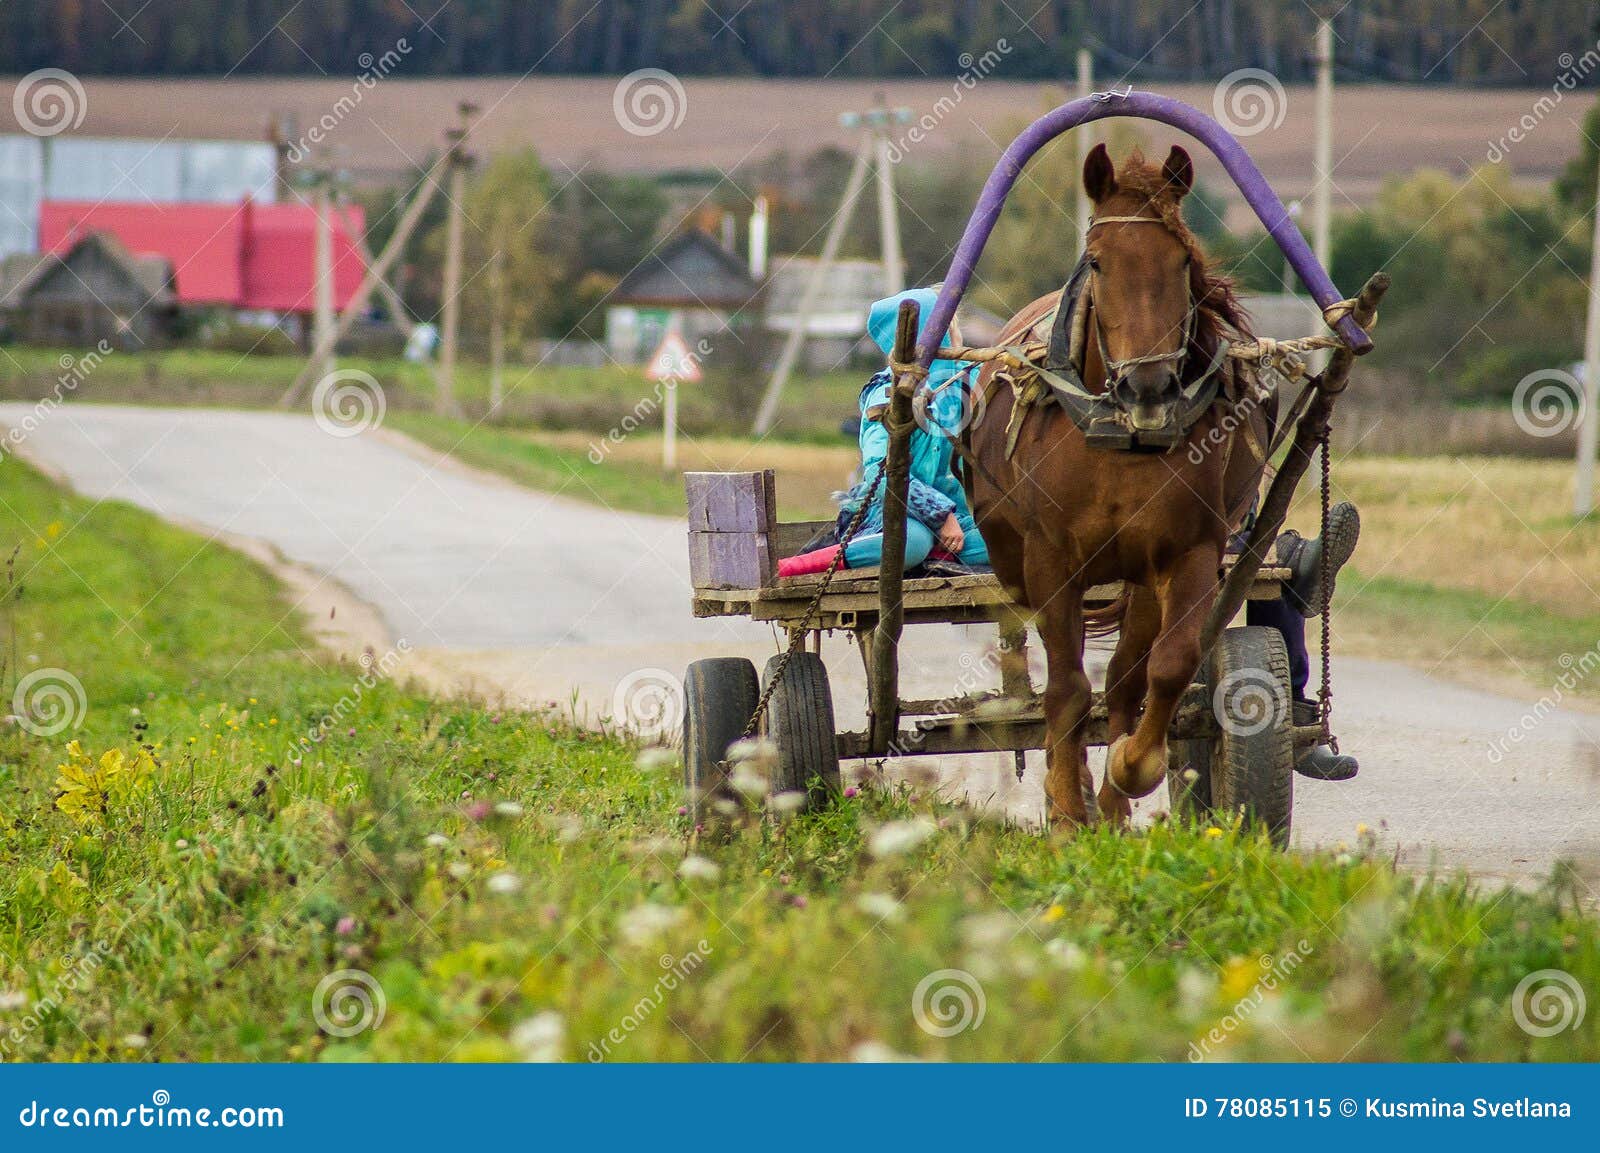 Задания в телеги. Телега в деревне. Лошадь с телегой в деревне. Лошадь с тележкой в деревне. Девушки на телеге в деревне.